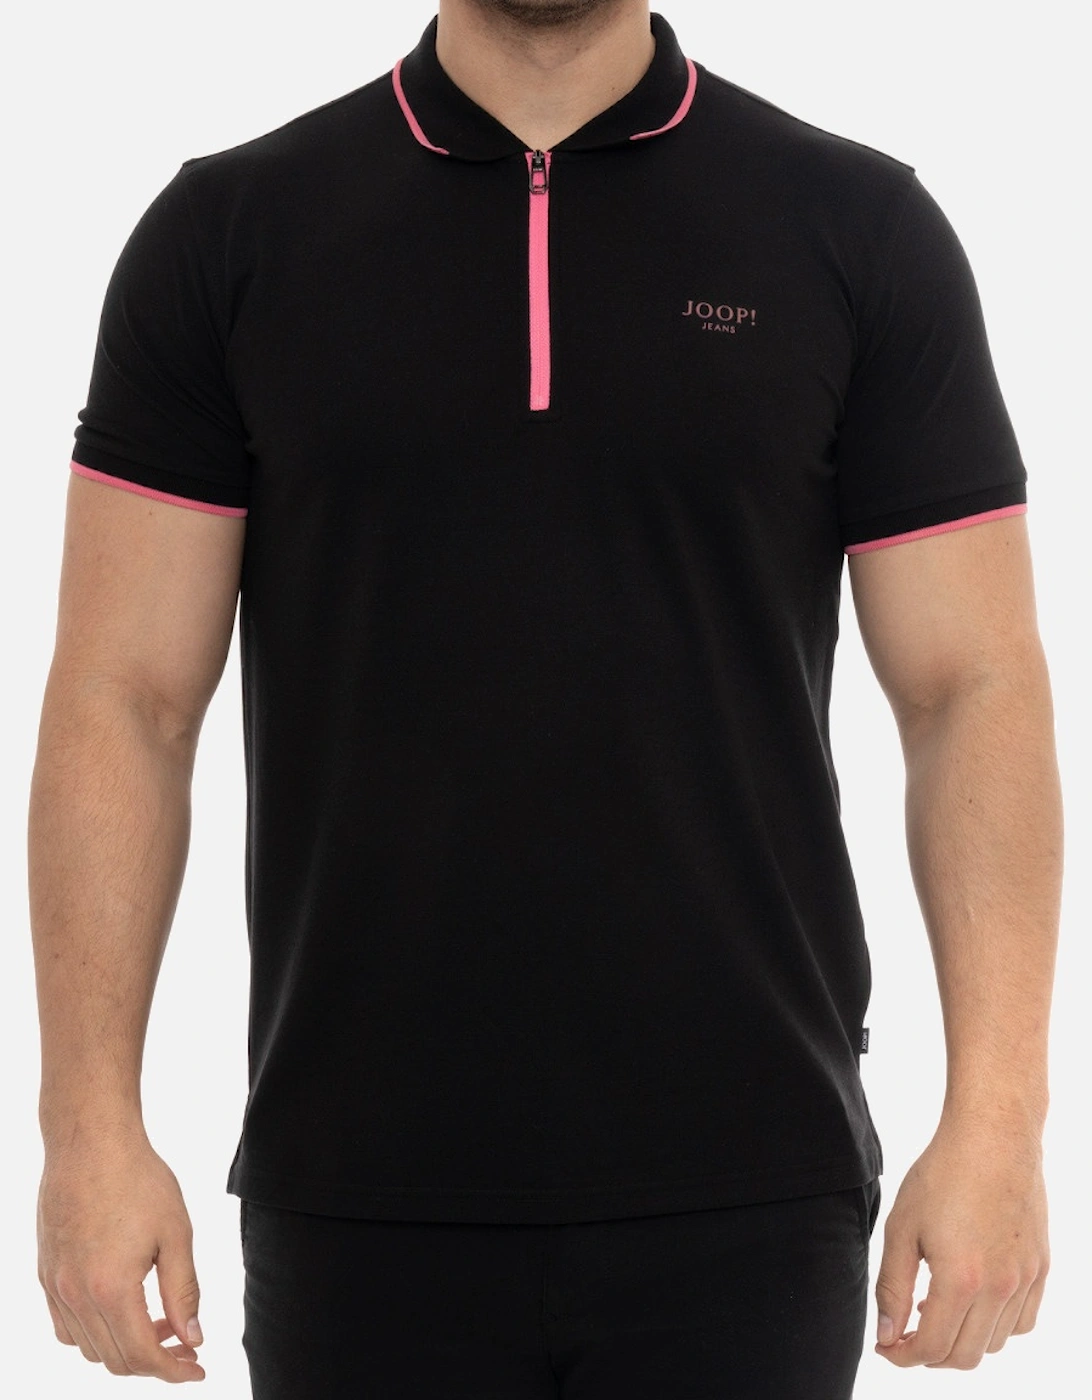 Joop Mens Zip Neck Polo Shirt (Black), 7 of 6